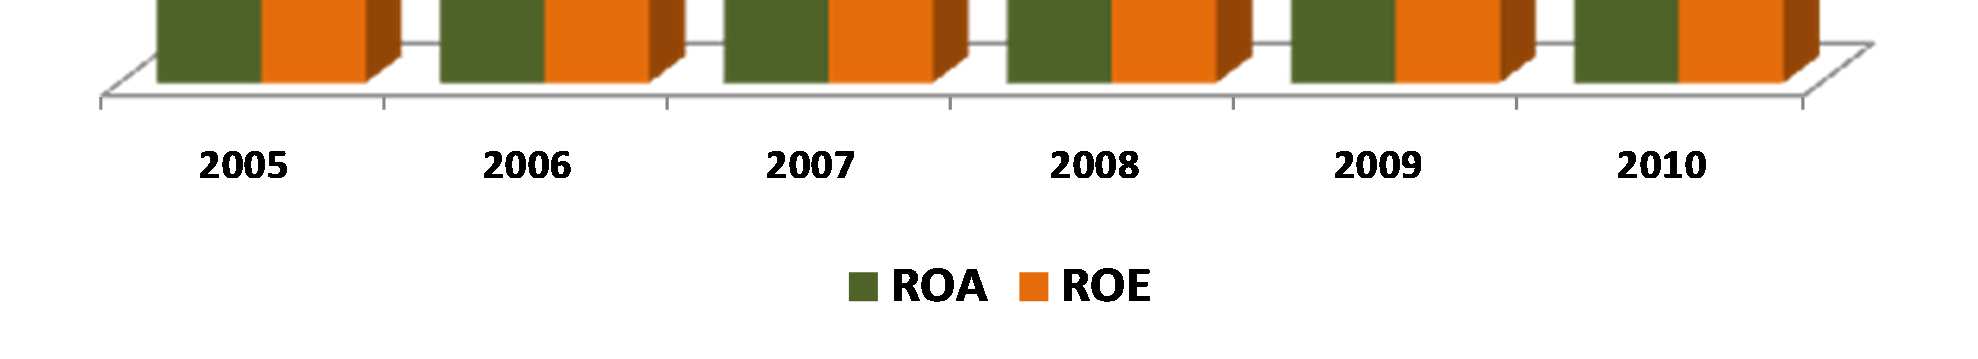 Retorno sobre o Ativo (ROA) versus Retorno sobre Patrimônio Líquido (ROE) Maiores